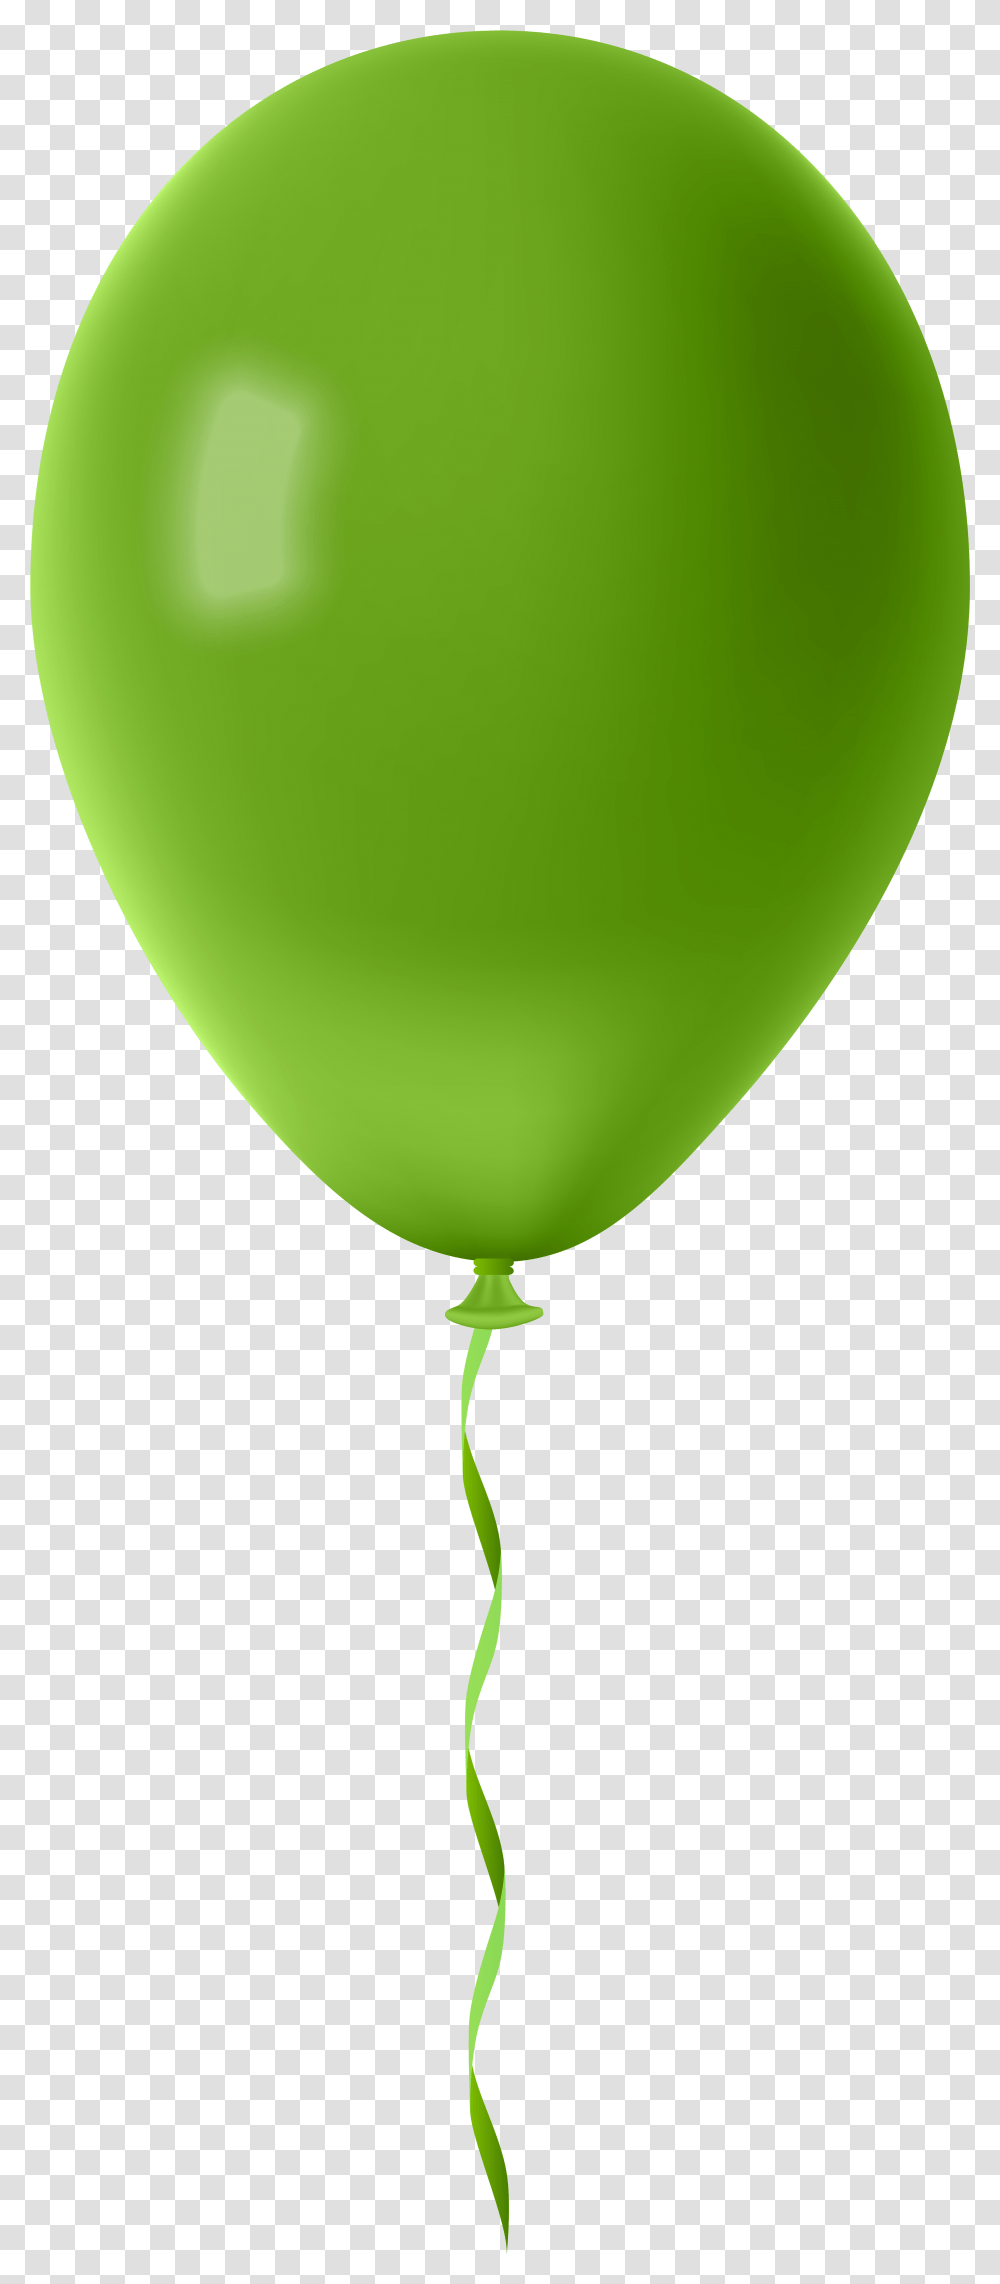 Balloons Clipart Green Balloon, Tennis Ball, Sport, Sports Transparent Png